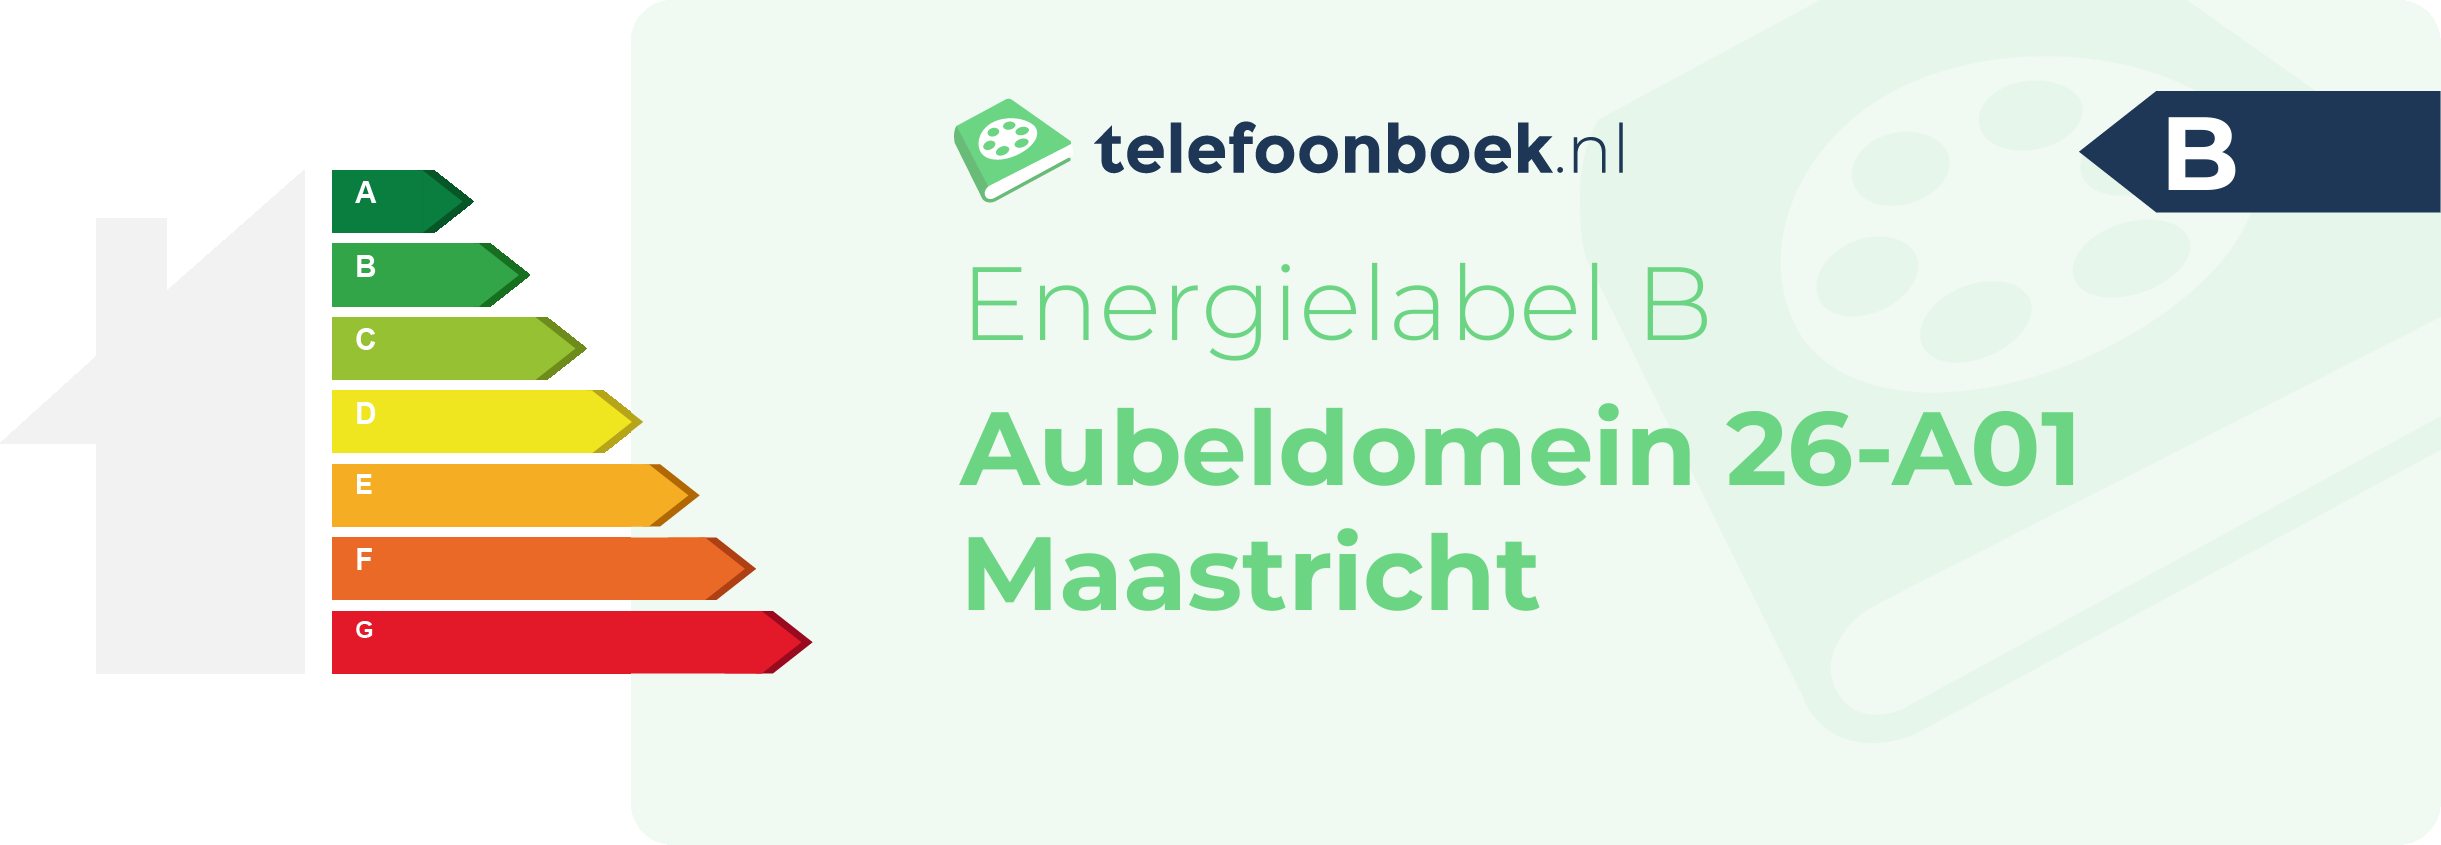 Energielabel Aubeldomein 26-A01 Maastricht